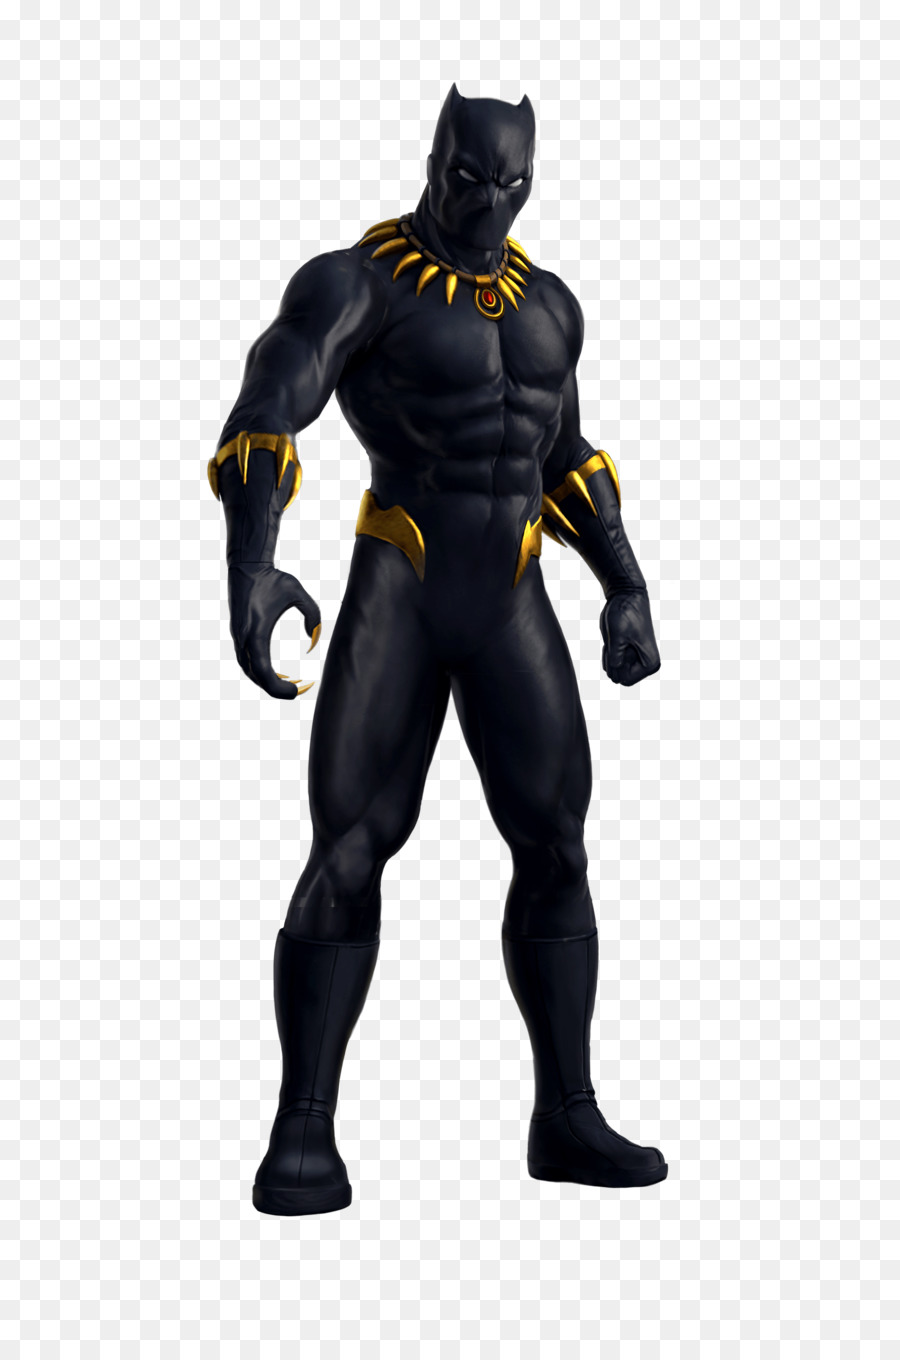 Black Panther Superhero Hulk Wakanda Fantastic Four - black panther animal png download - 2663*4000 - Free Transparent Black Panther png Download.